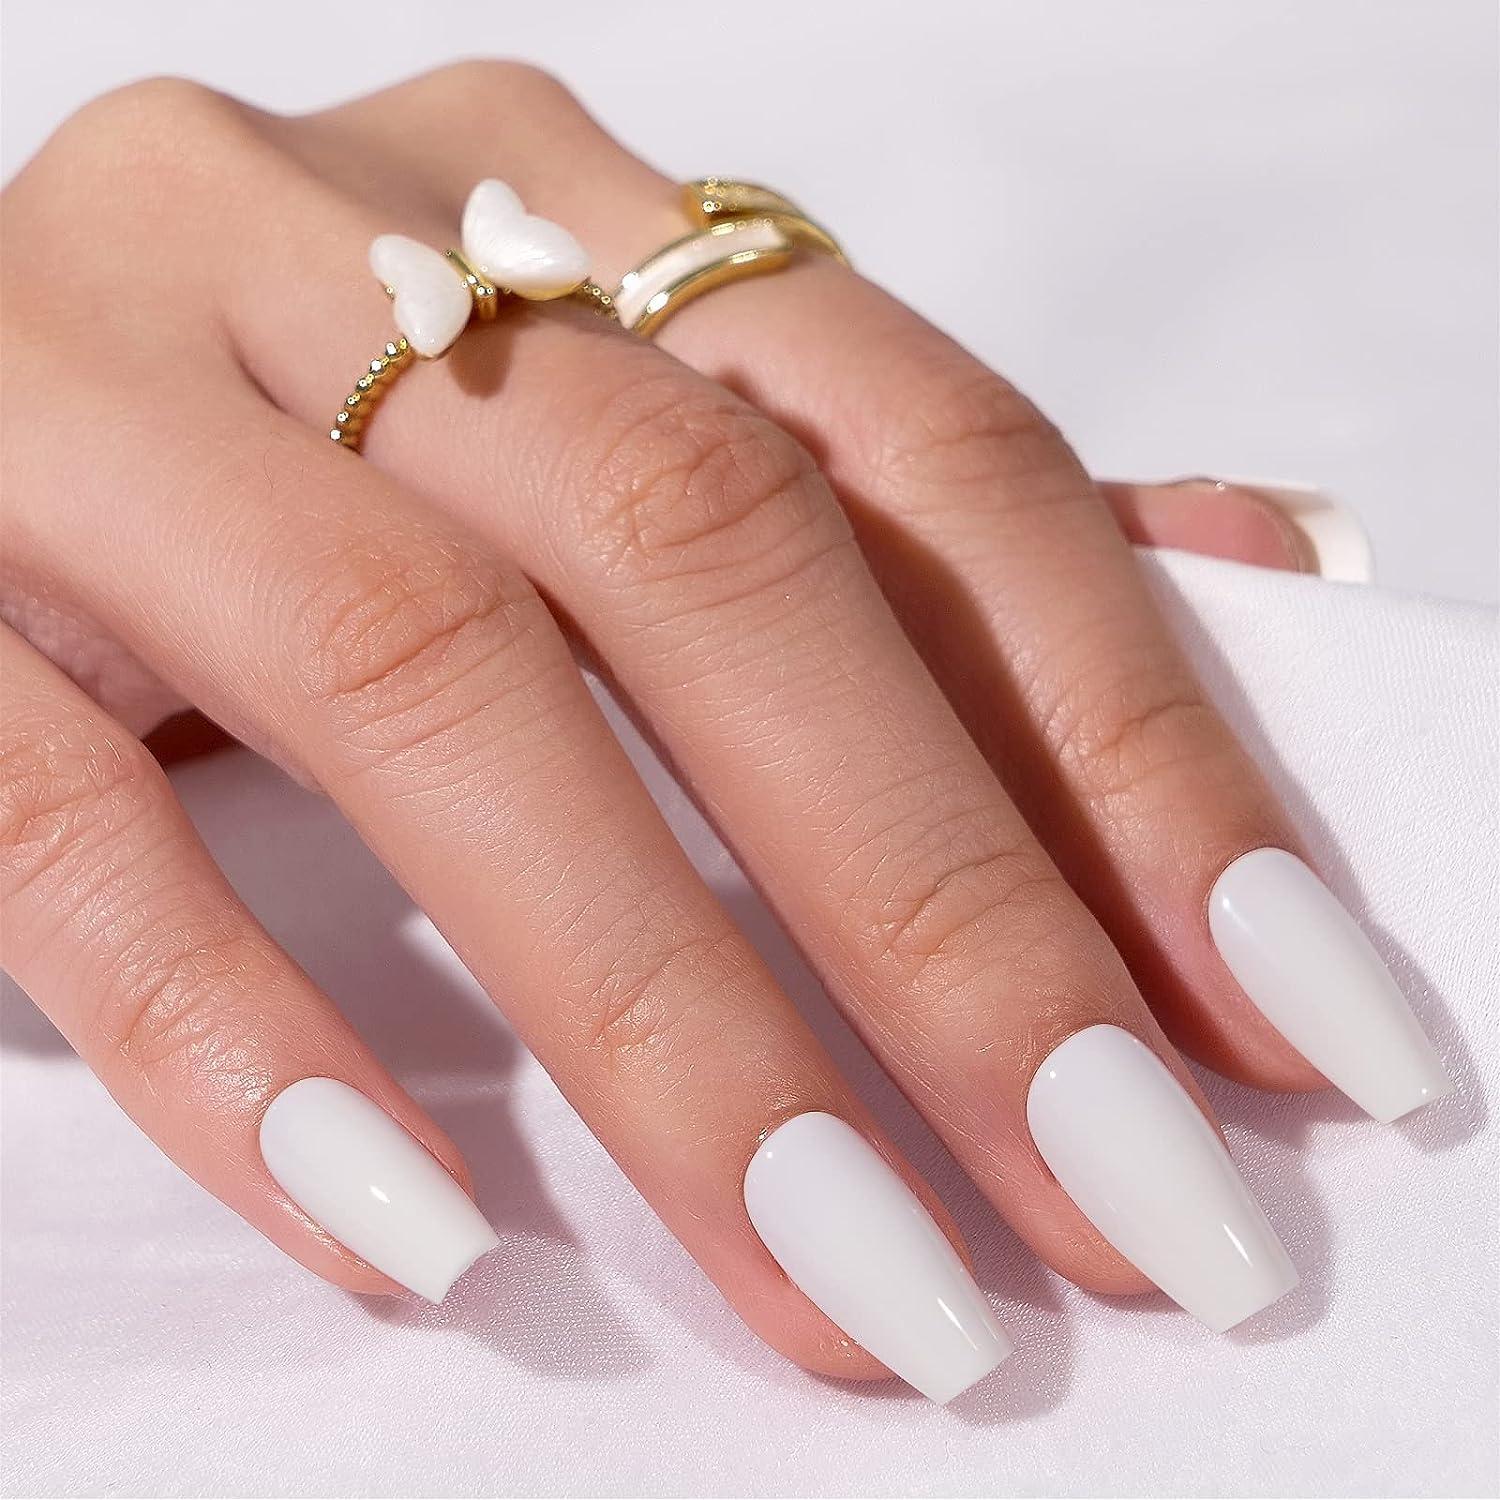 Snow White Nail Wraps | Matte white nails, White nails, White acrylic nails